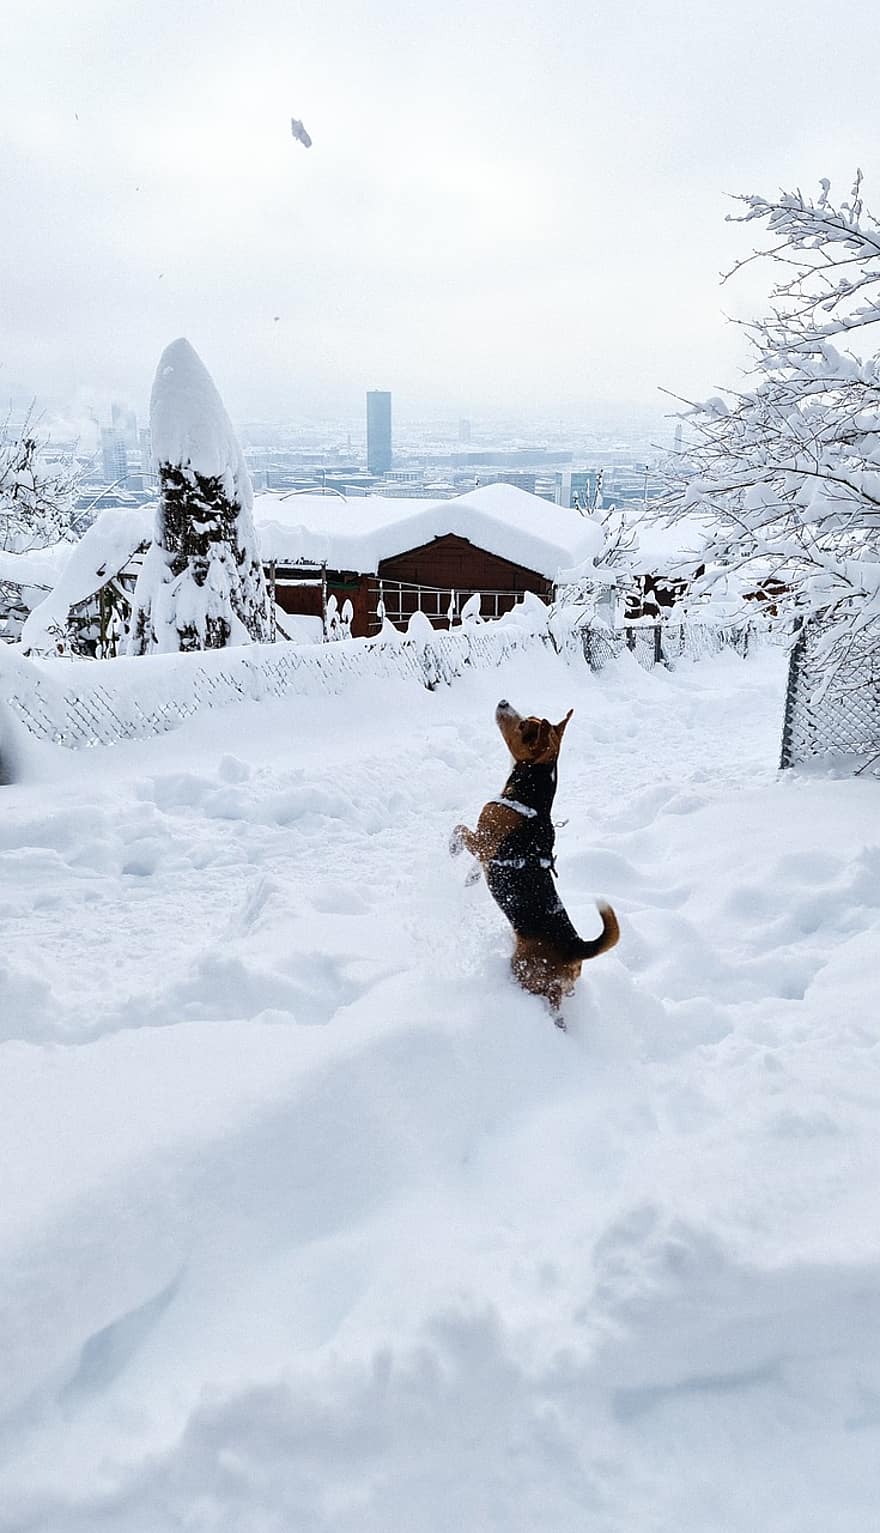 cane, la neve, inverno, giocare, animale domestico, giocoso, cane giocoso, nevoso, invernale, brina, gelido